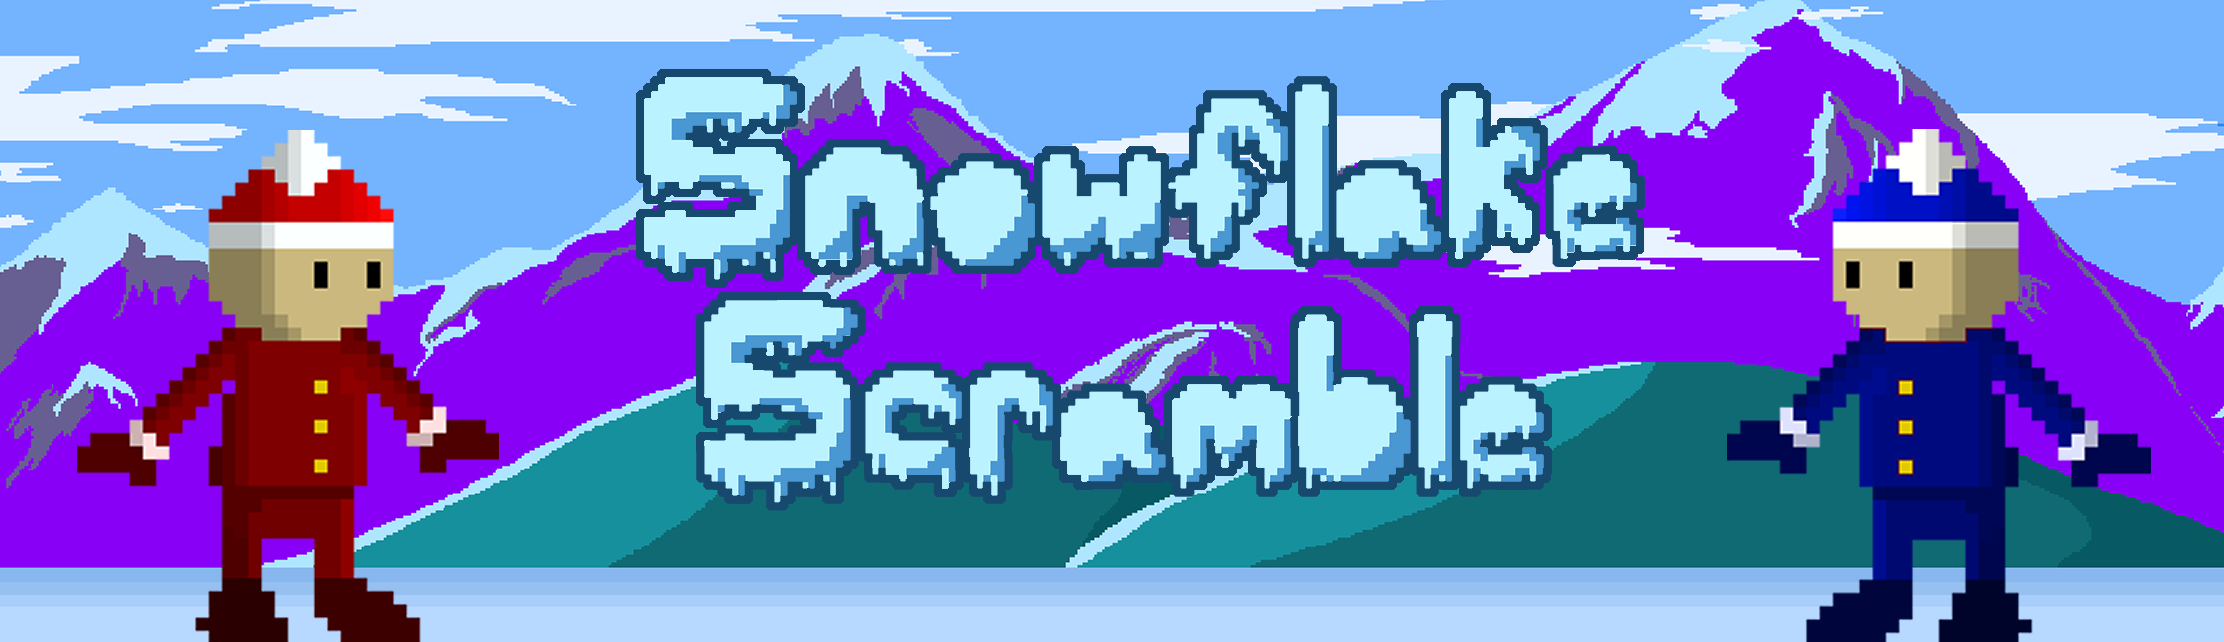 Snowflake Scramble